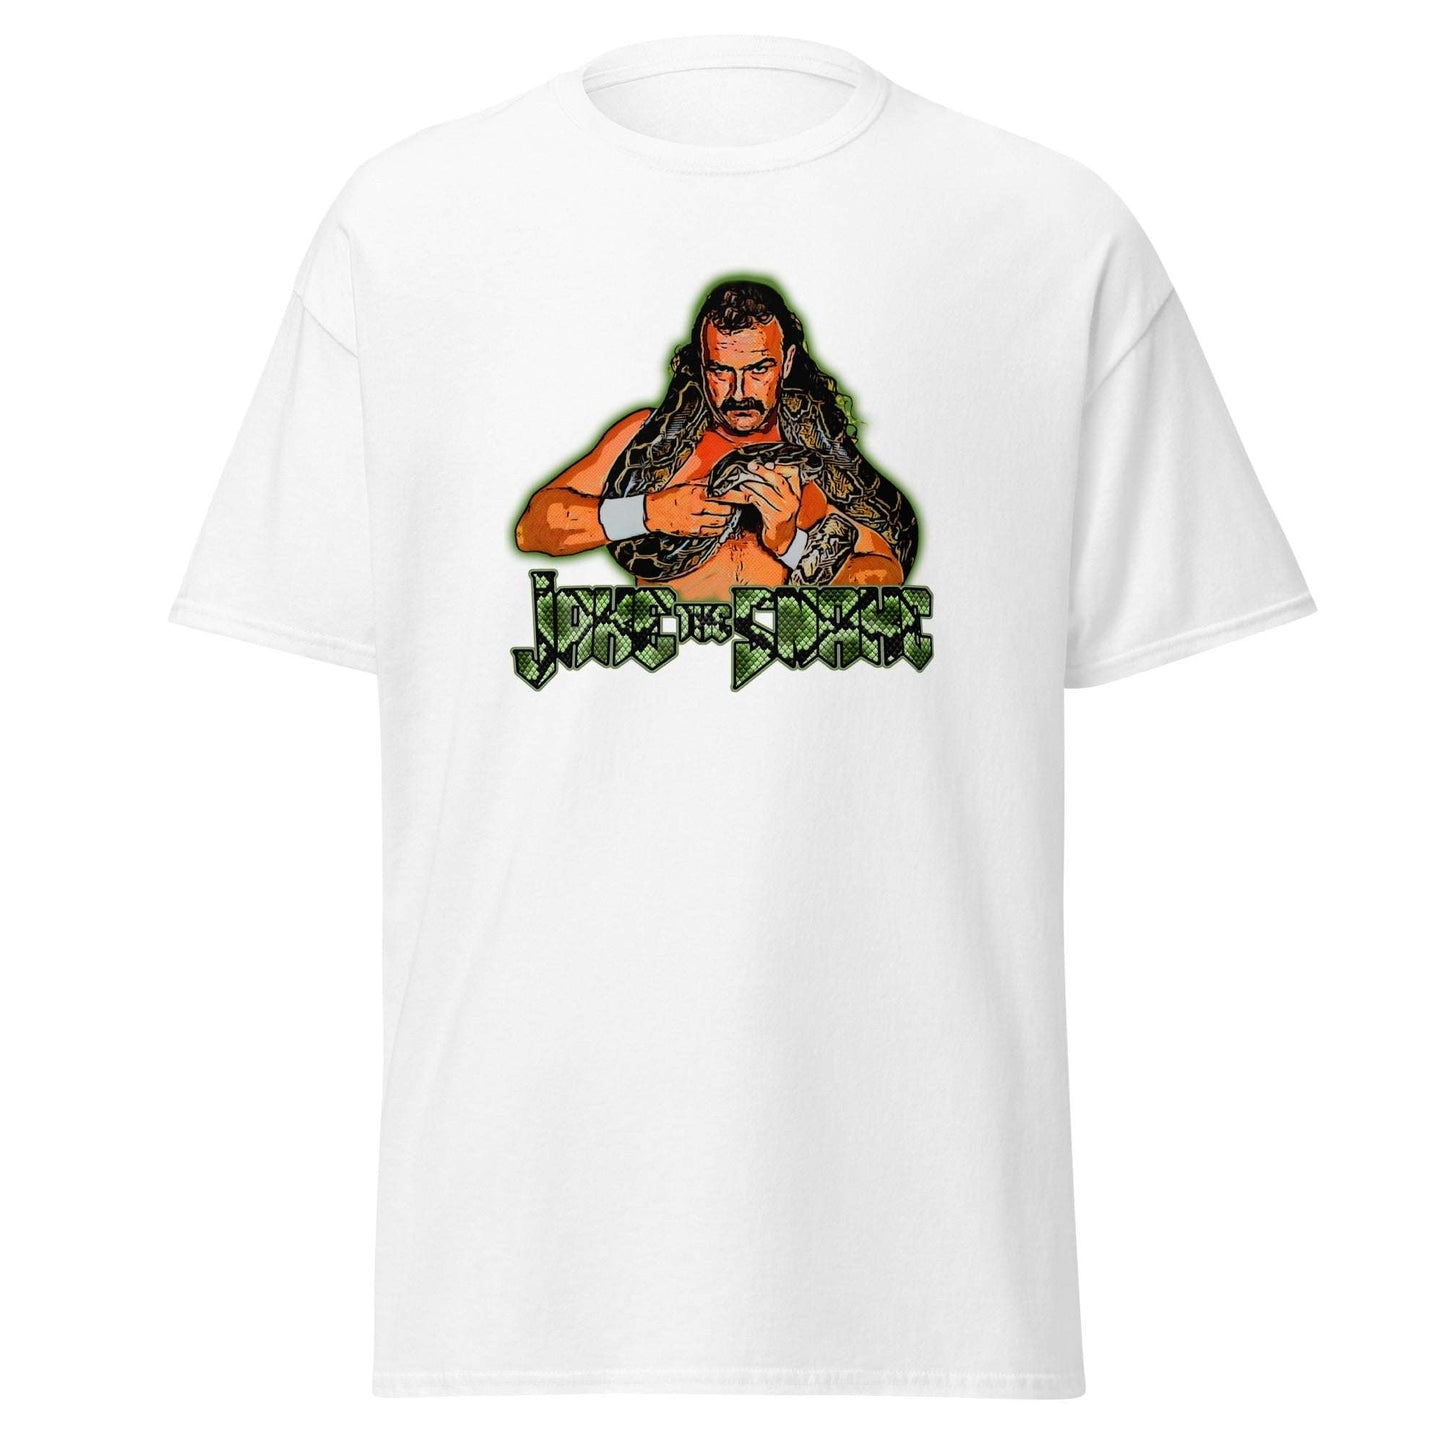 Jake the Snake 80s Wrestling Shirt - Wrestling Legend Tee - thenightmareinc